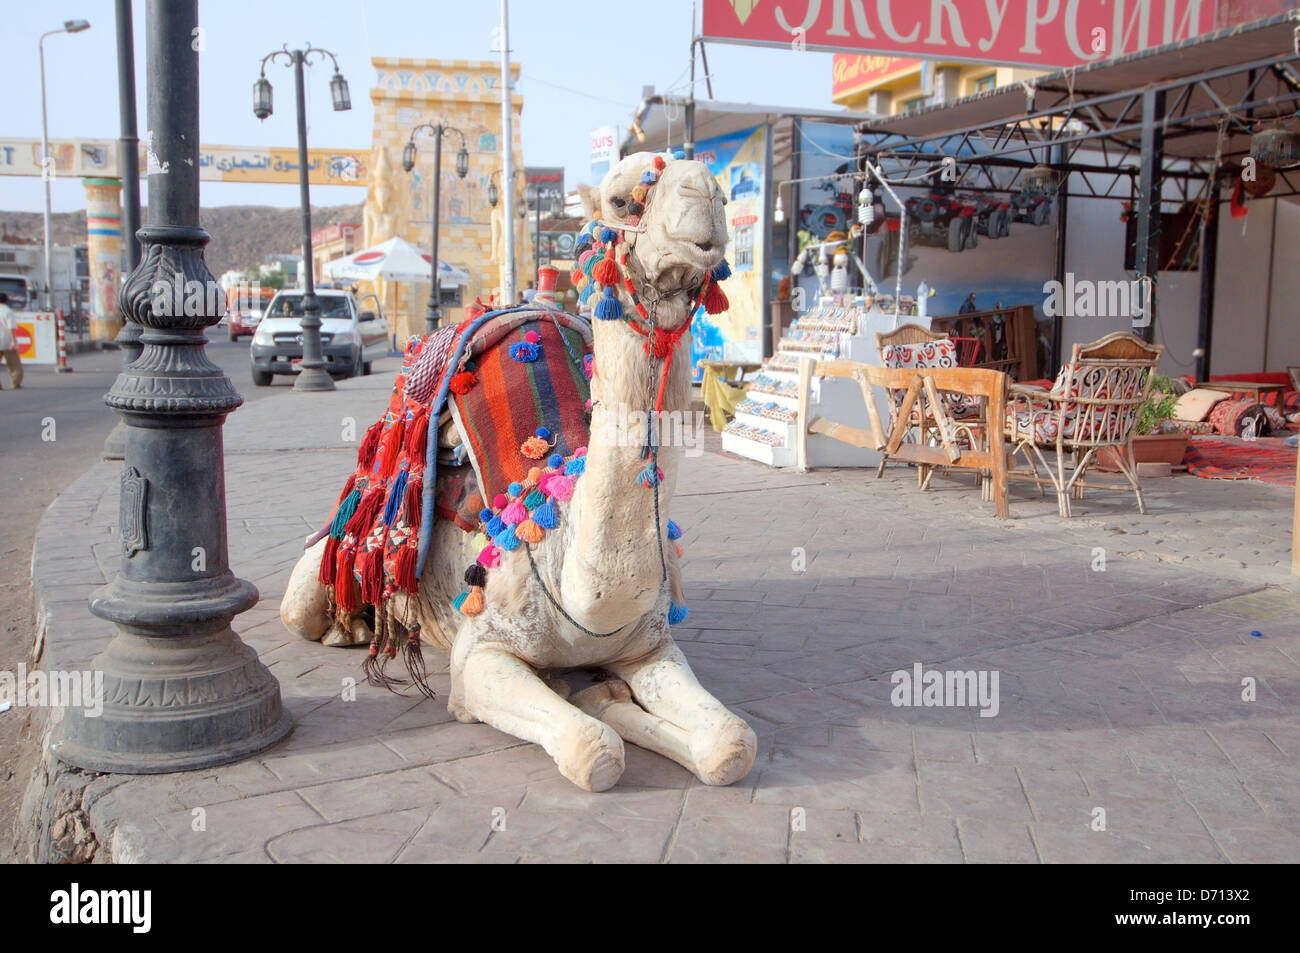 Chameau d'arabie (Camelus dromedarius) couché sur la route, du Vieux Marché, Charm el-Cheikh, péninsule du Sinaï, Égypte Banque D'Images